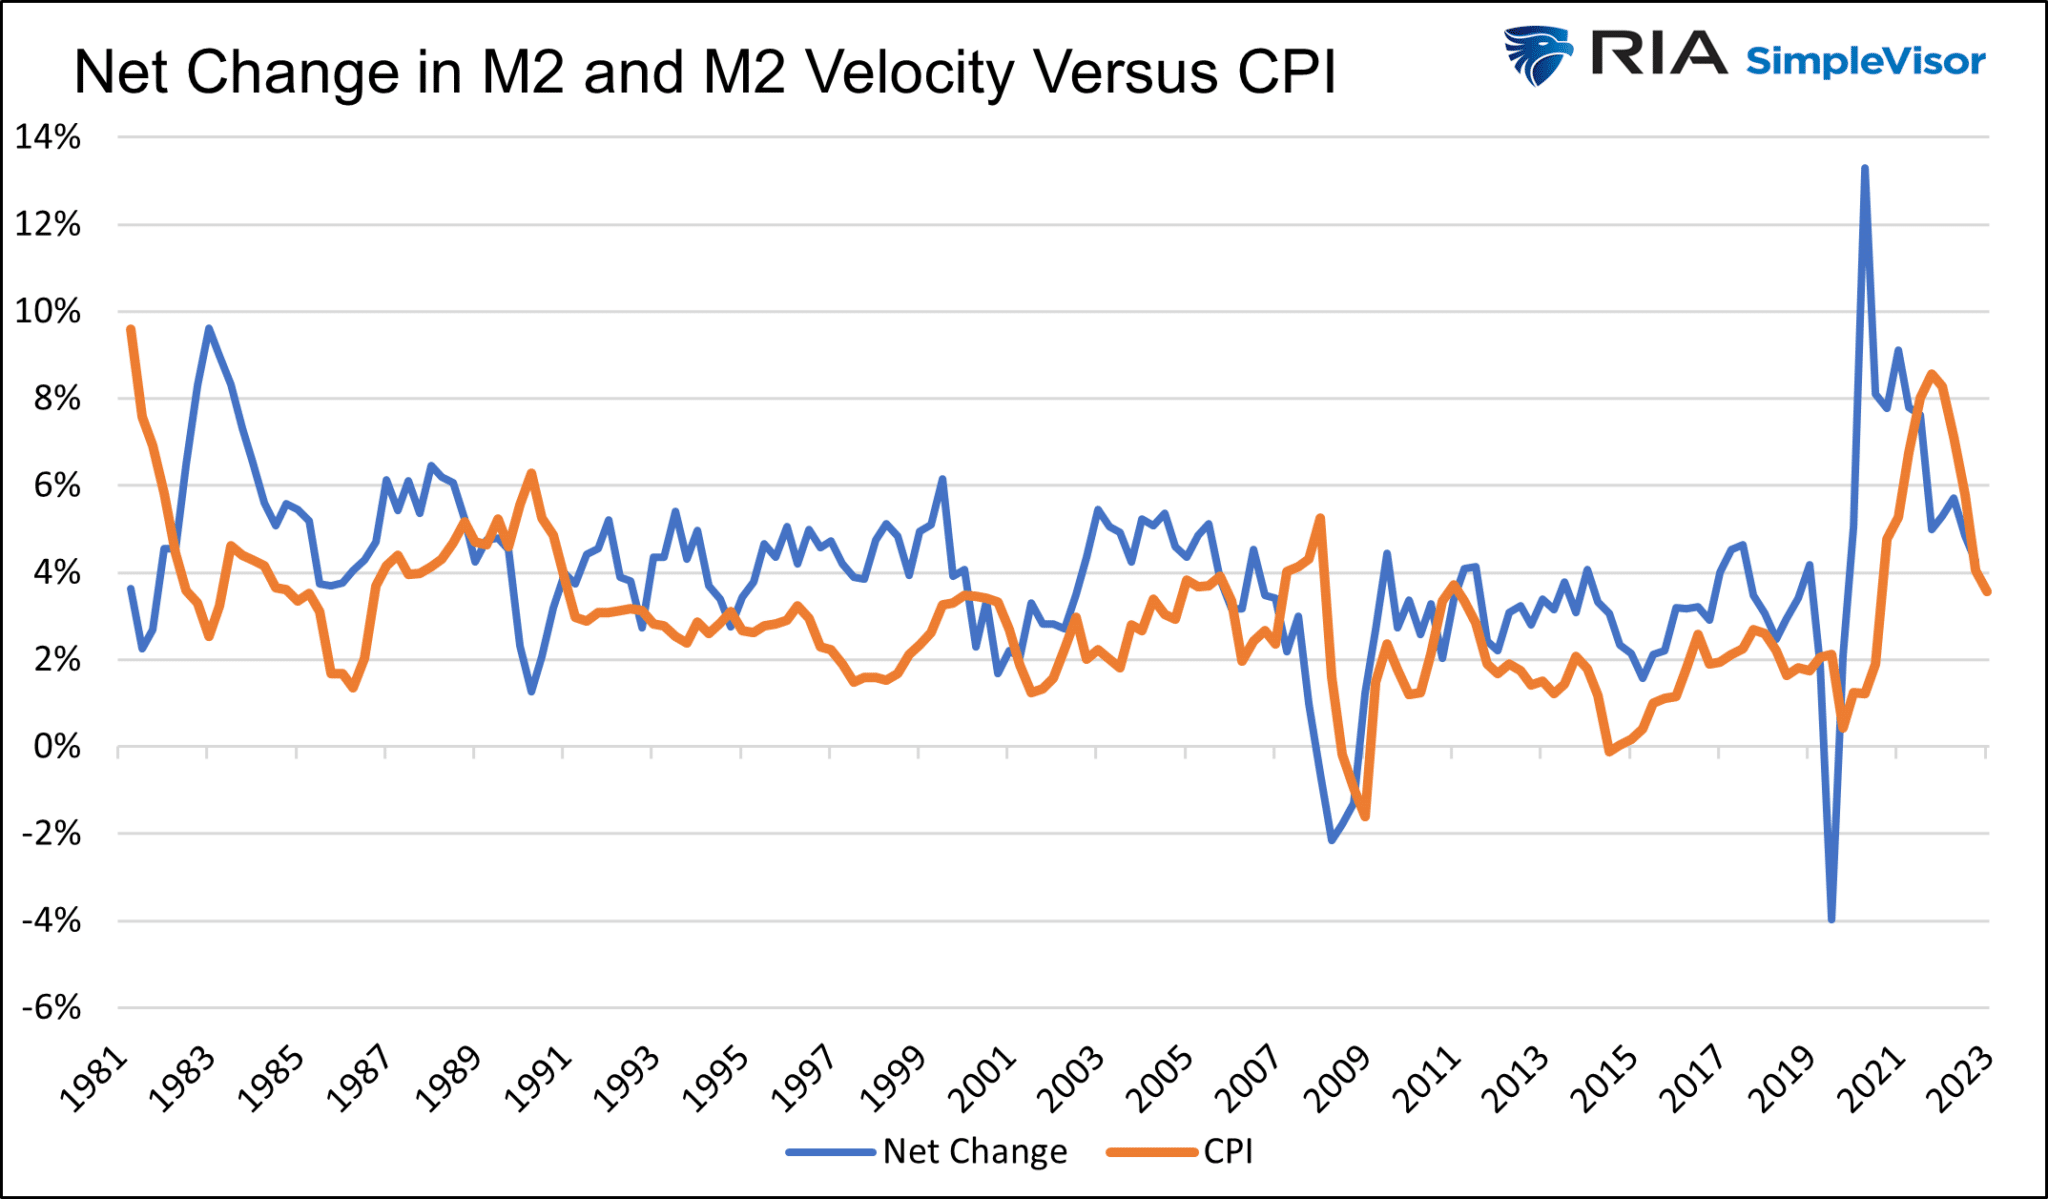 Net Change in M2 and Velocity vs CPI